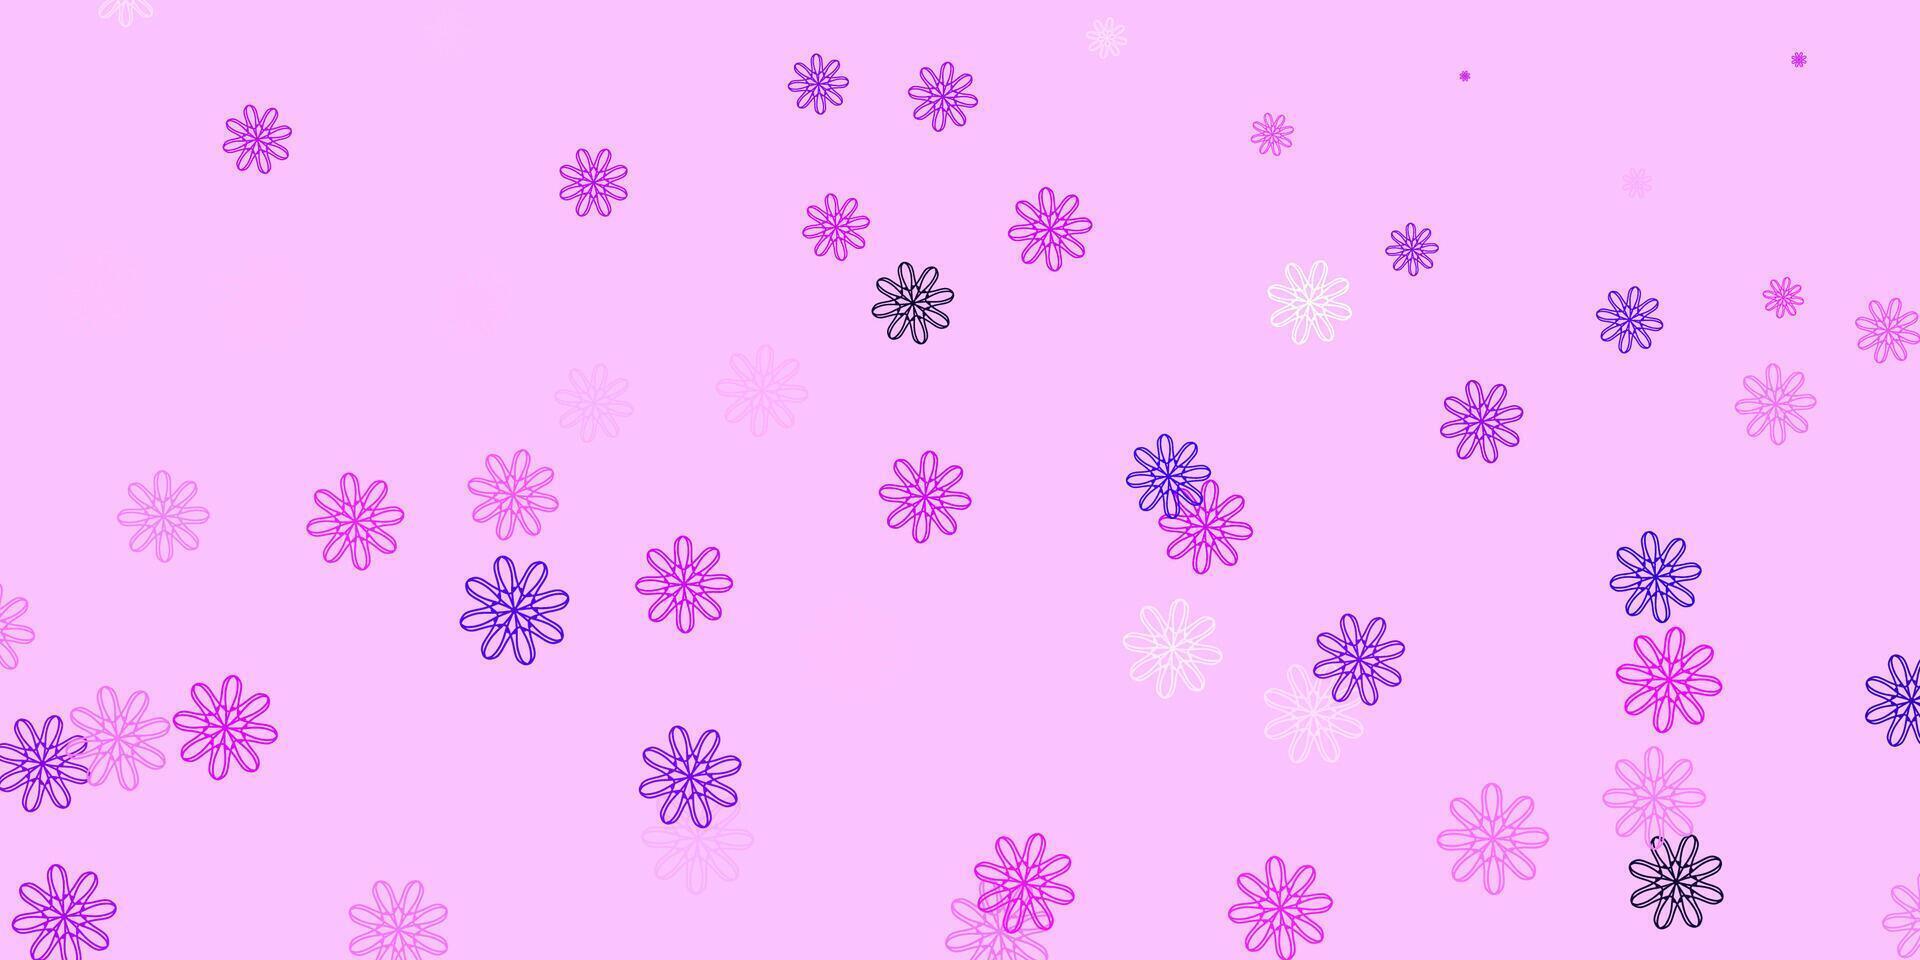 natürlicher Hintergrund des hellvioletten, rosa Vektors mit Blumen. vektor